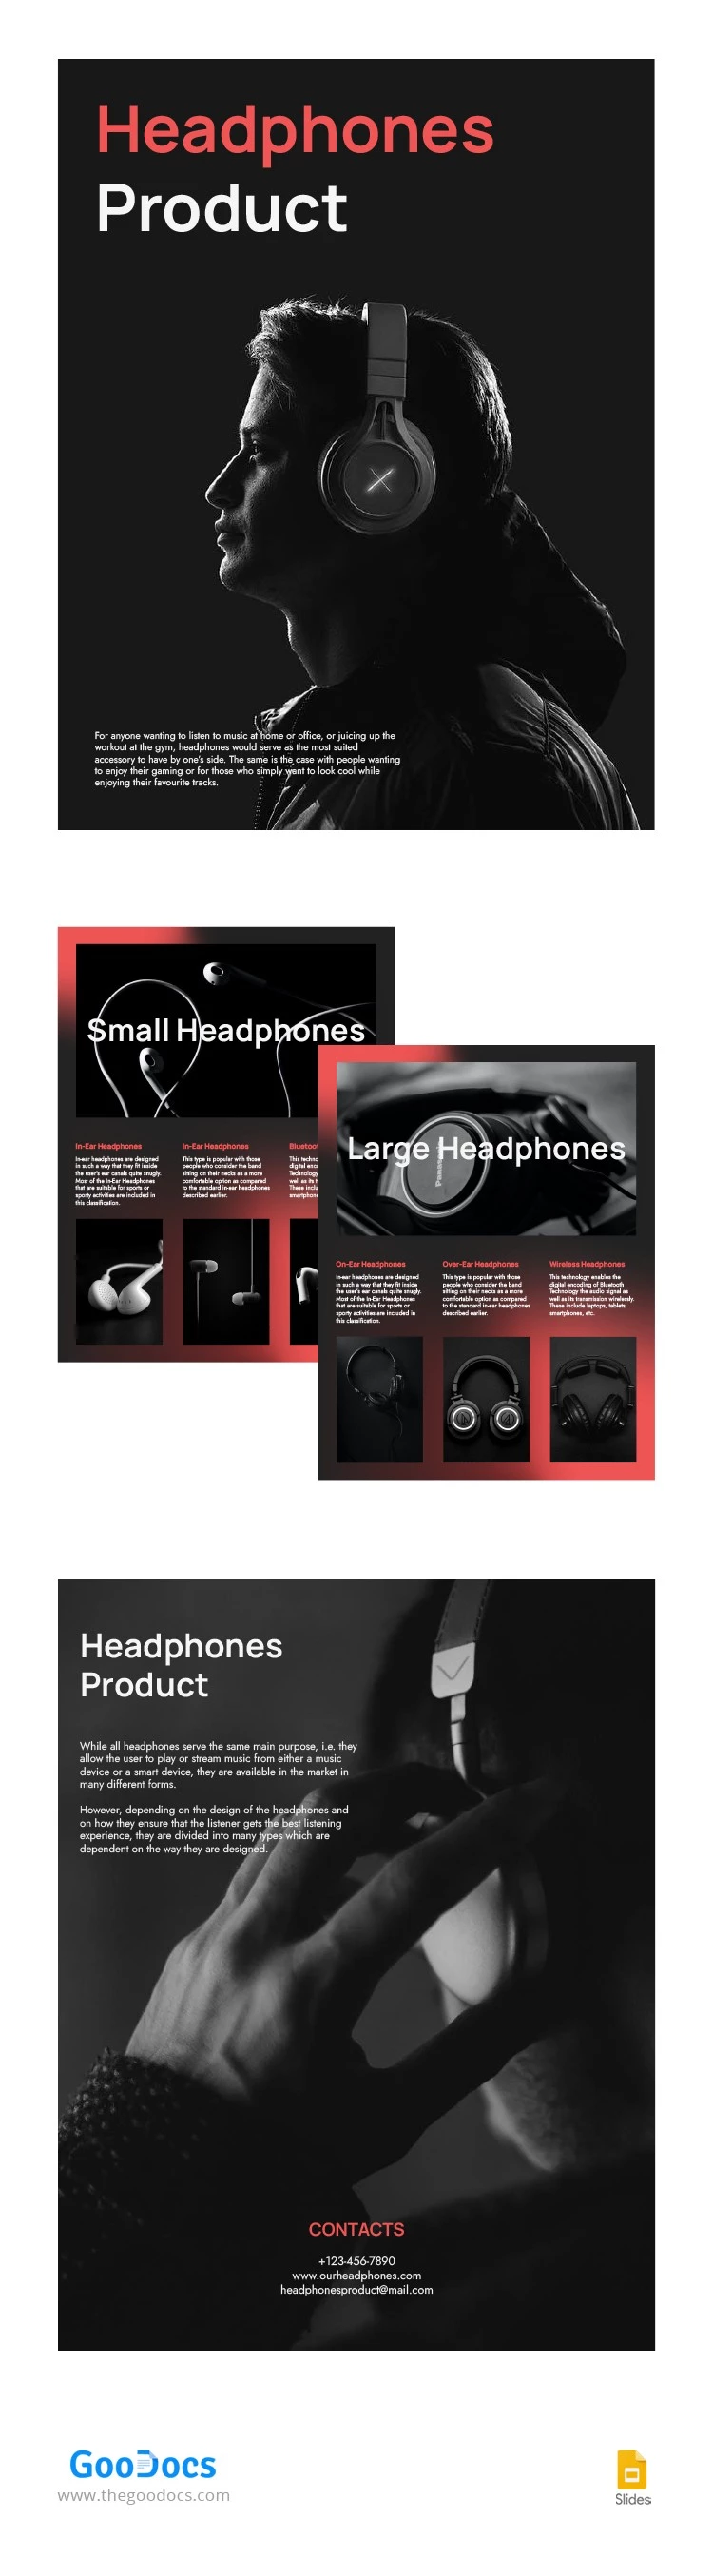 Catálogo de auriculares - free Google Docs Template - 10063016